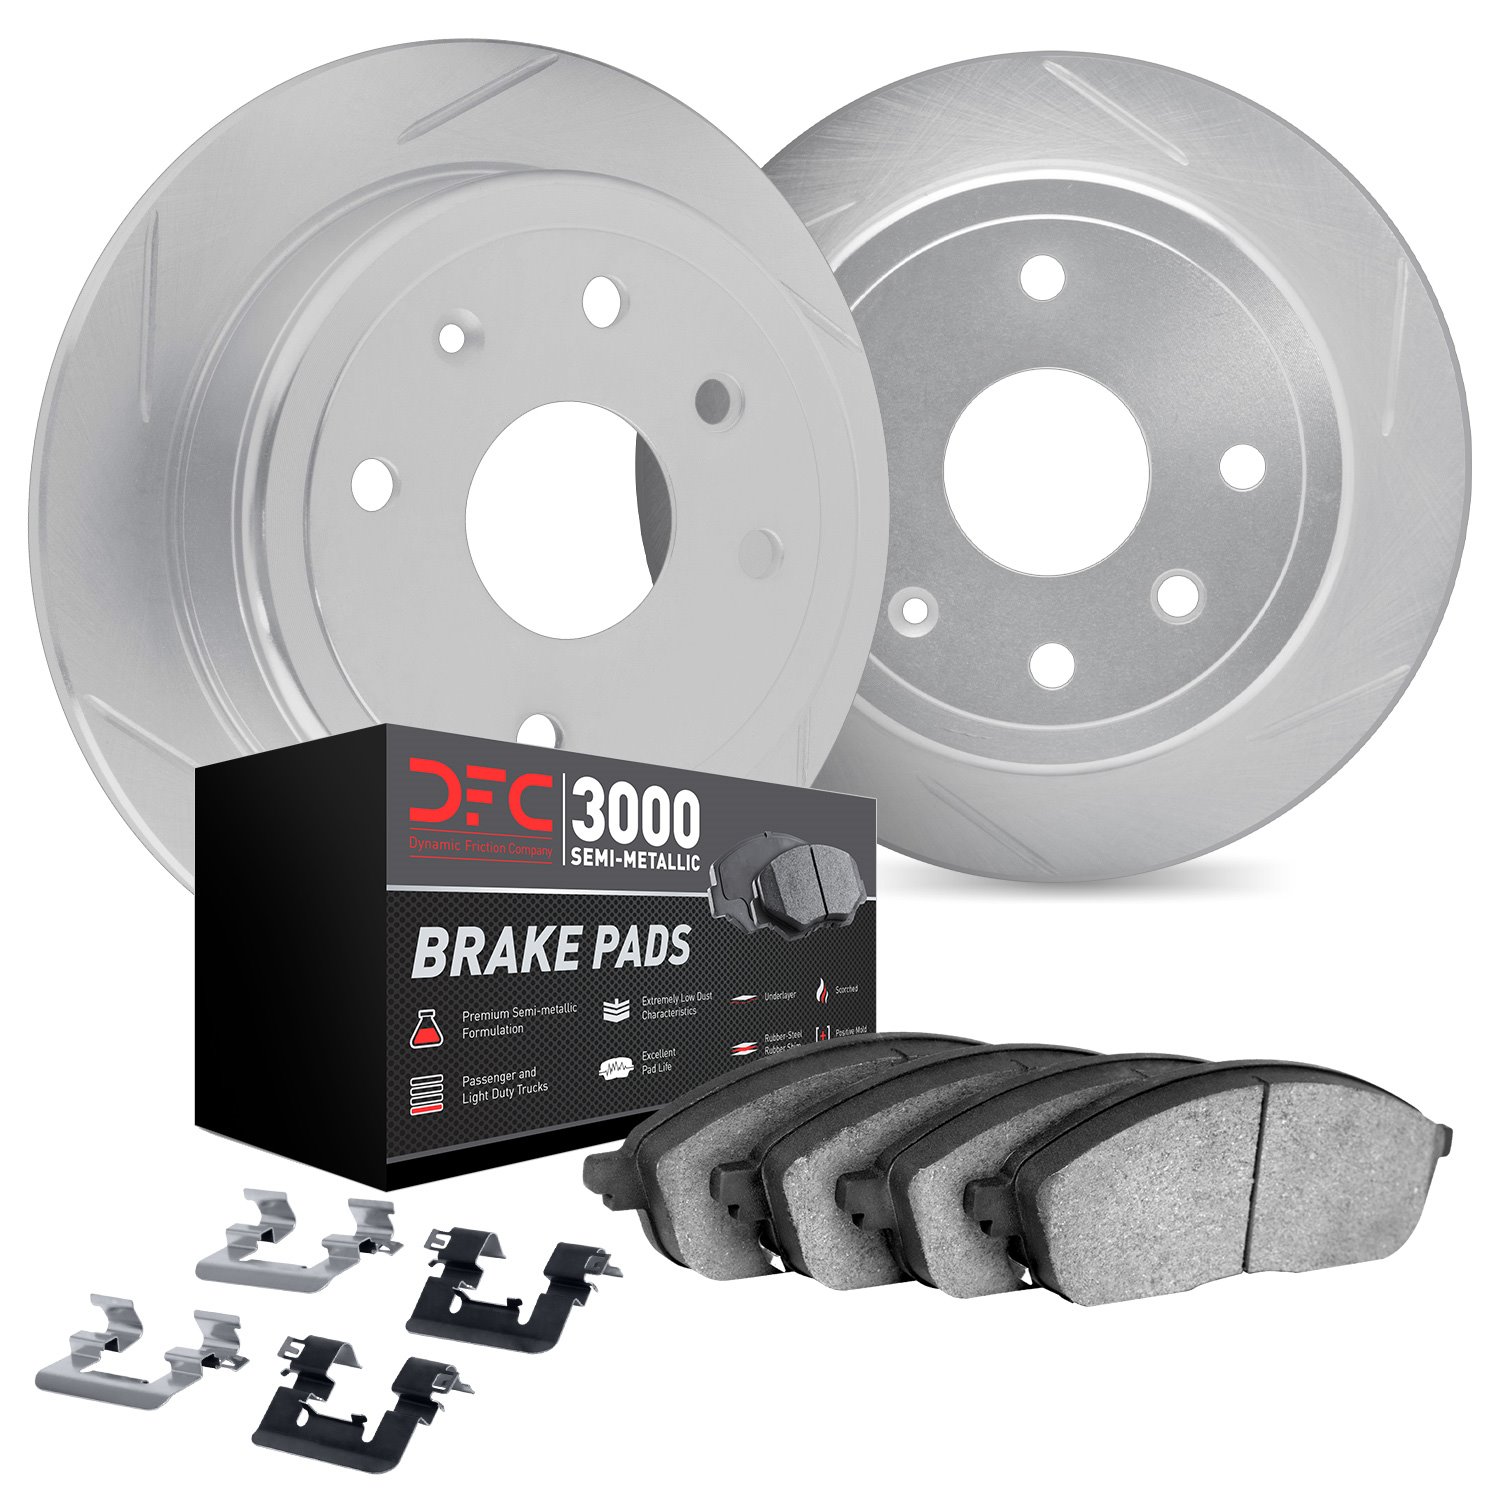 5112-63106 Slotted Brake Rotors with 3000-Series Semi-Metallic Brake Pads Kit & Hardware [Silver], 2006-2012 Mercedes-Benz, Posi